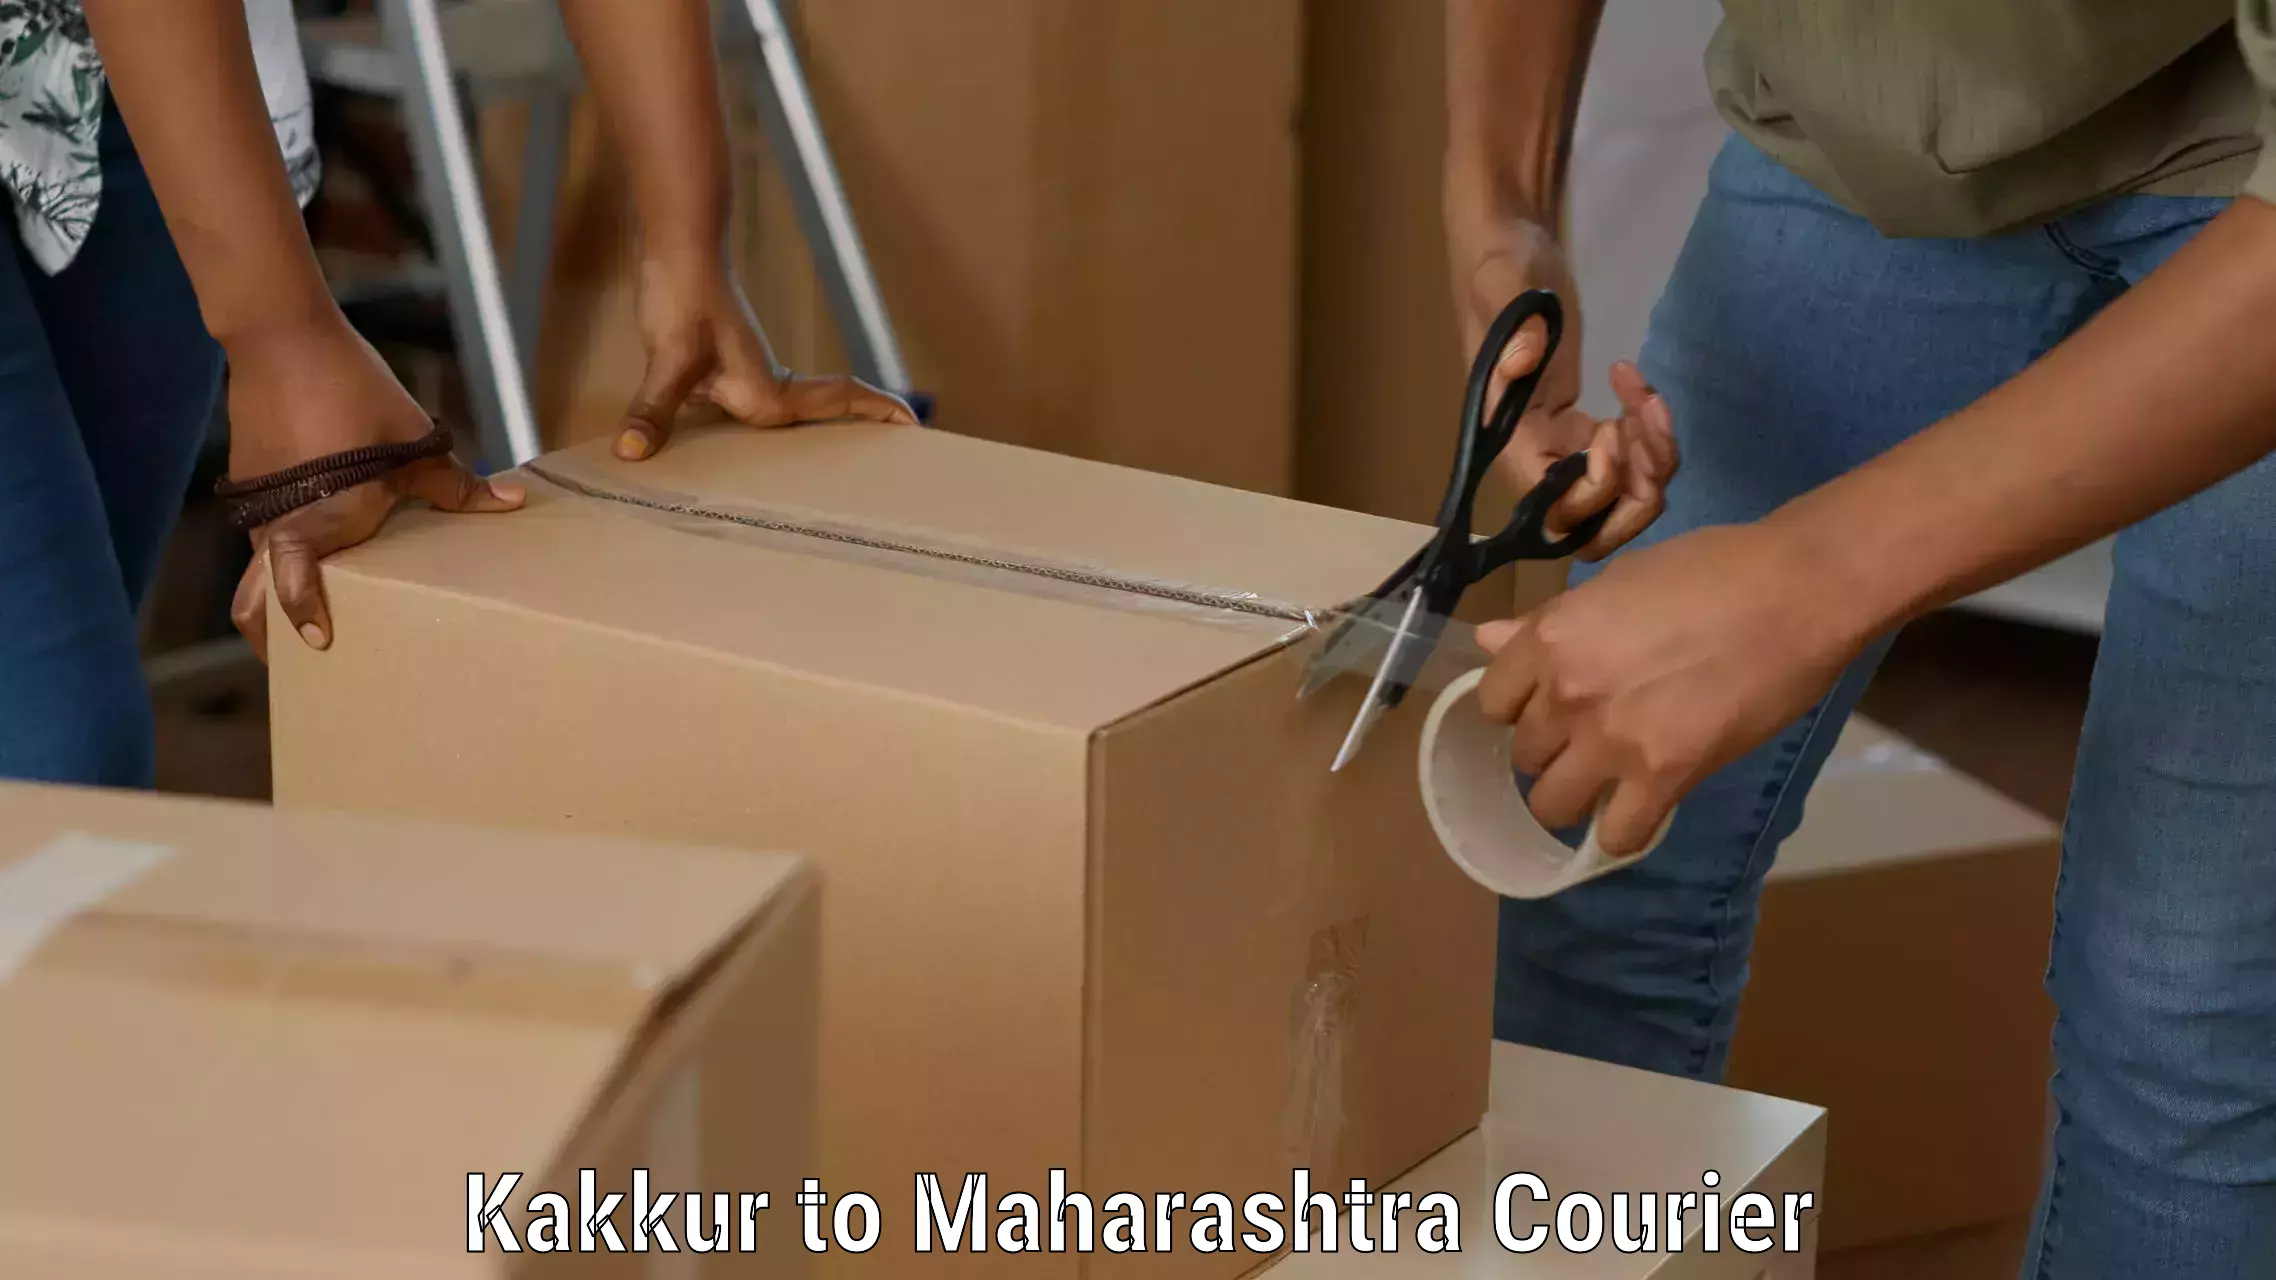 Cargo delivery service Kakkur to Maharashtra